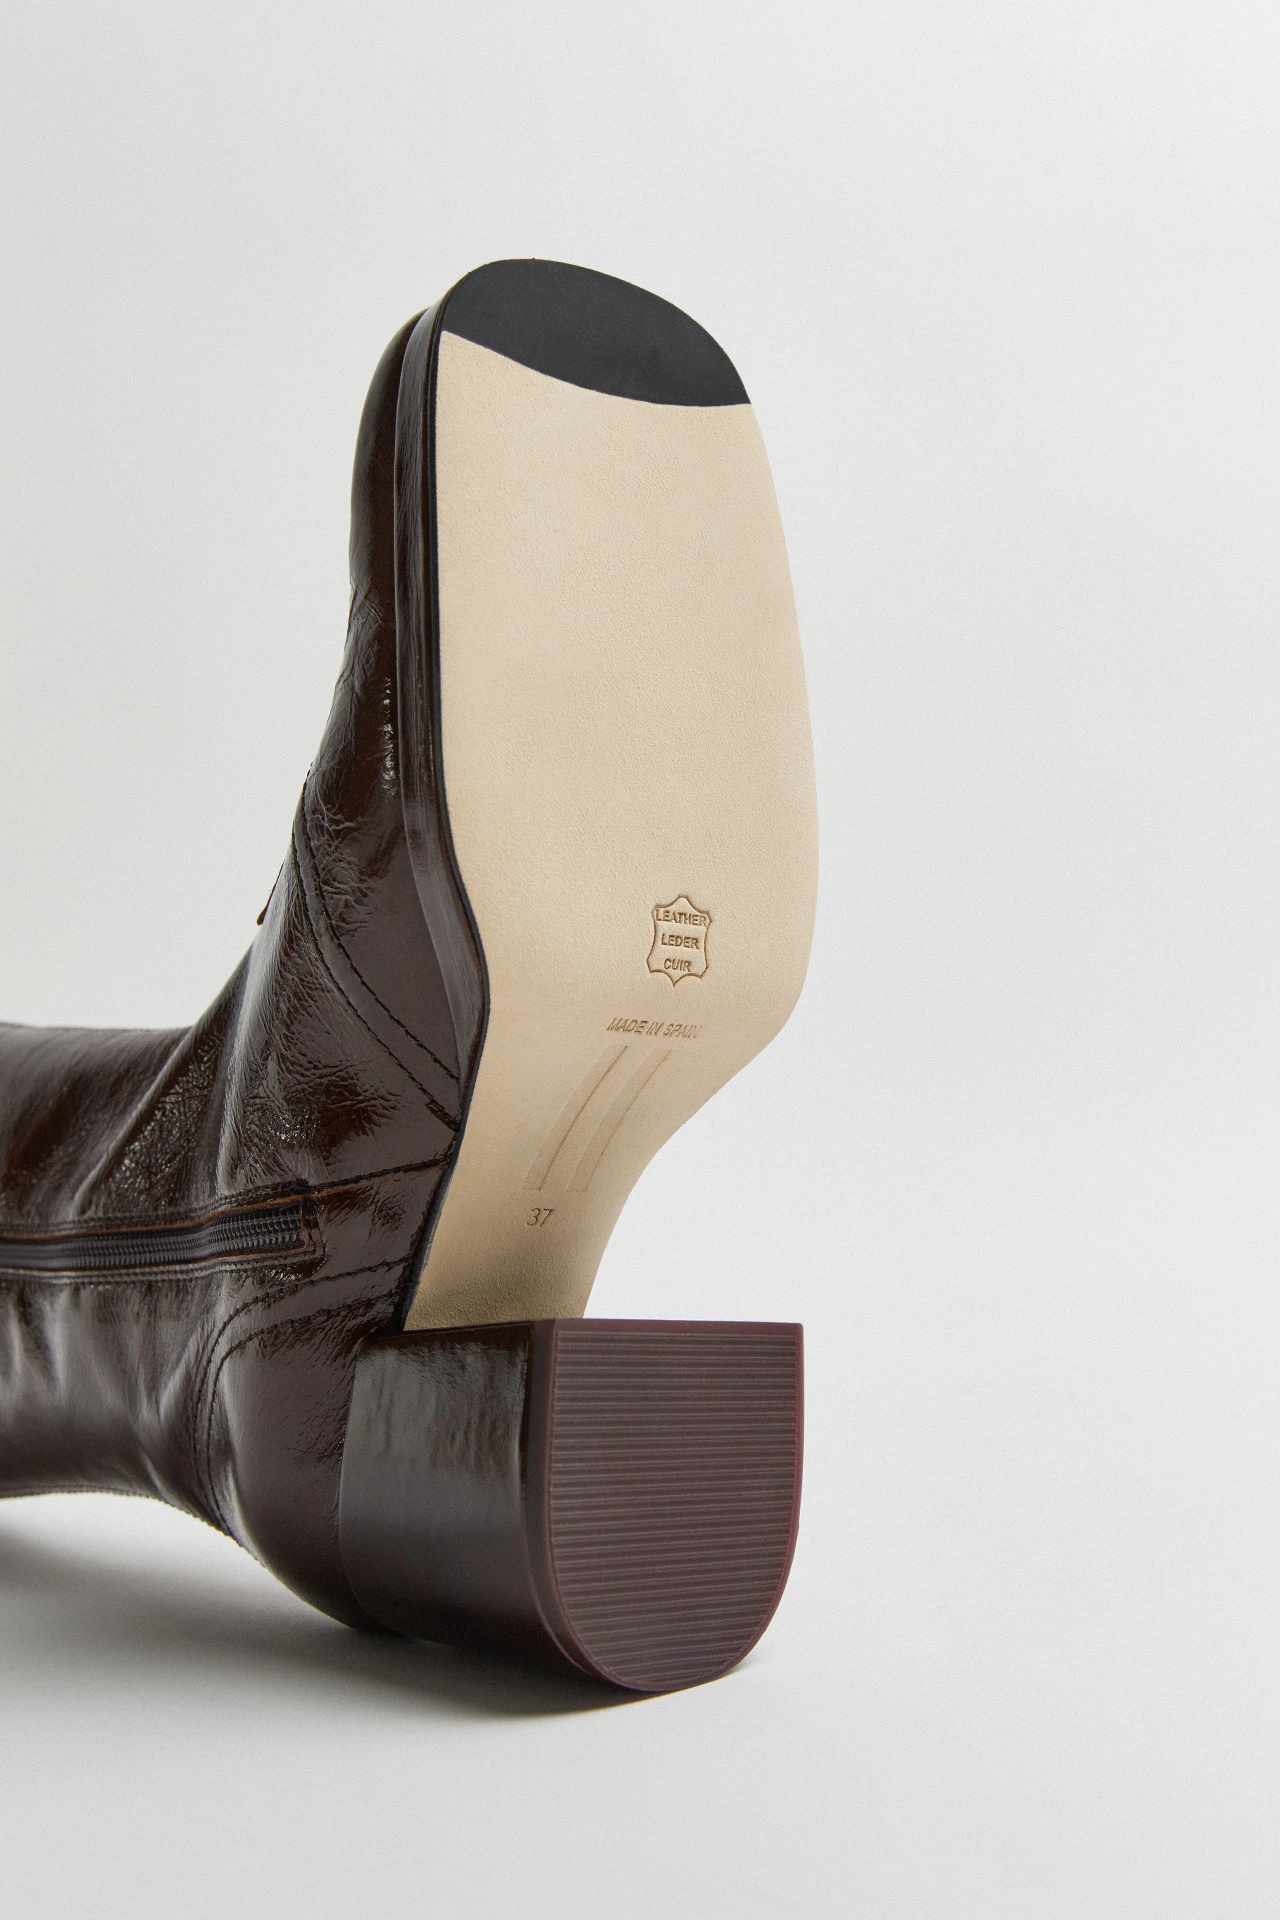 Miista-cass-brown-patent-boots-06